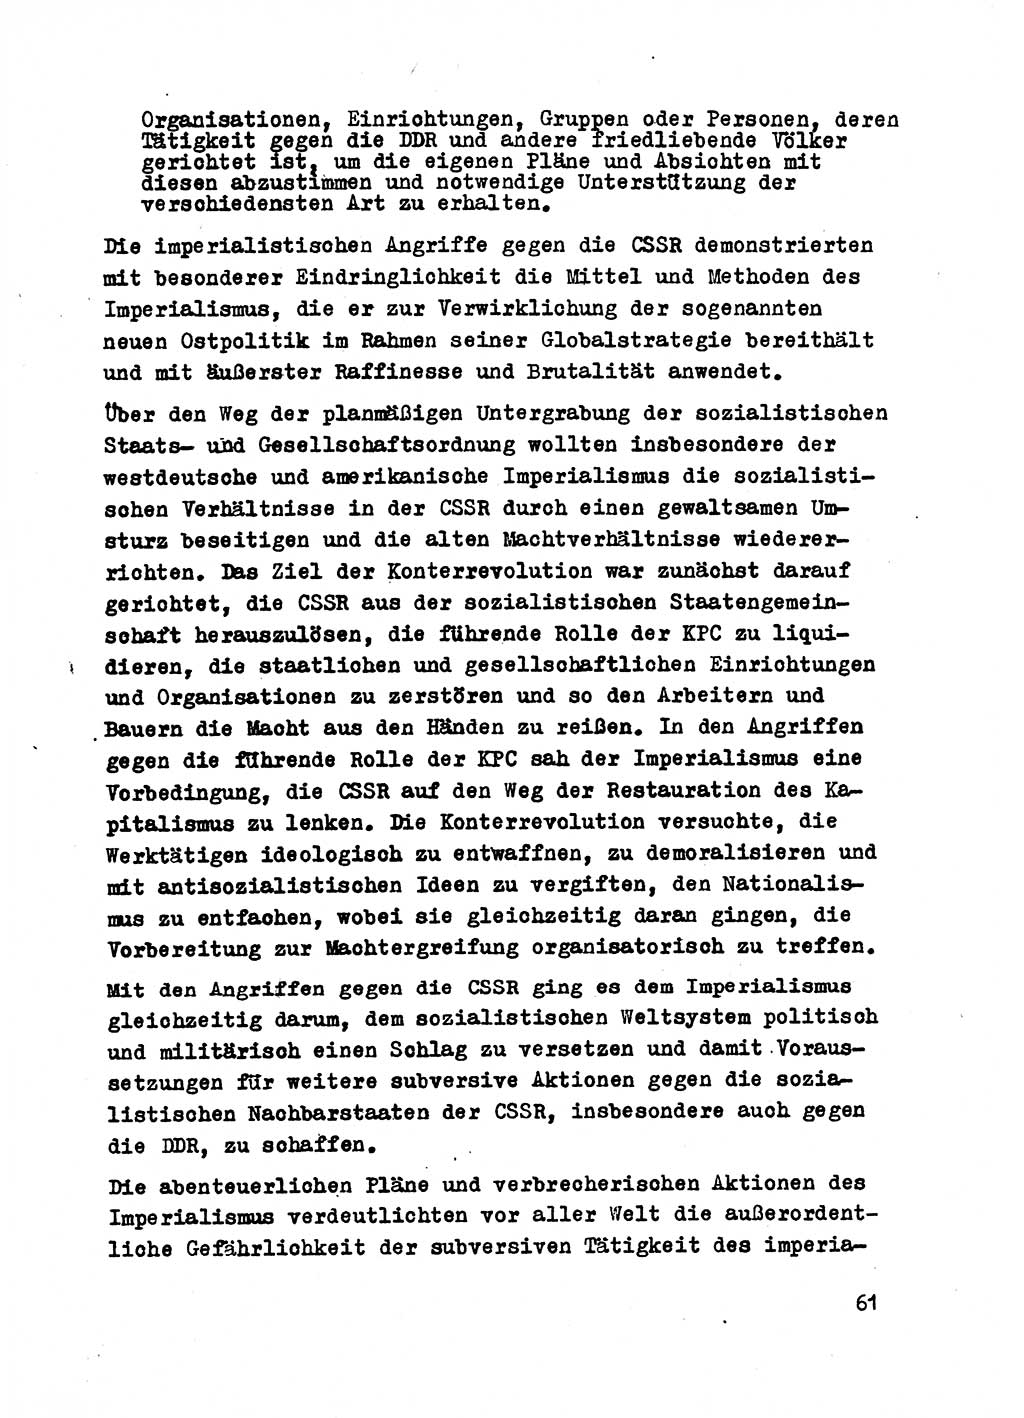 Strafrecht der DDR (Deutsche Demokratische Republik), Besonderer Teil, Lehrmaterial, Heft 2 1969, Seite 61 (Strafr. DDR BT Lehrmat. H. 2 1969, S. 61)